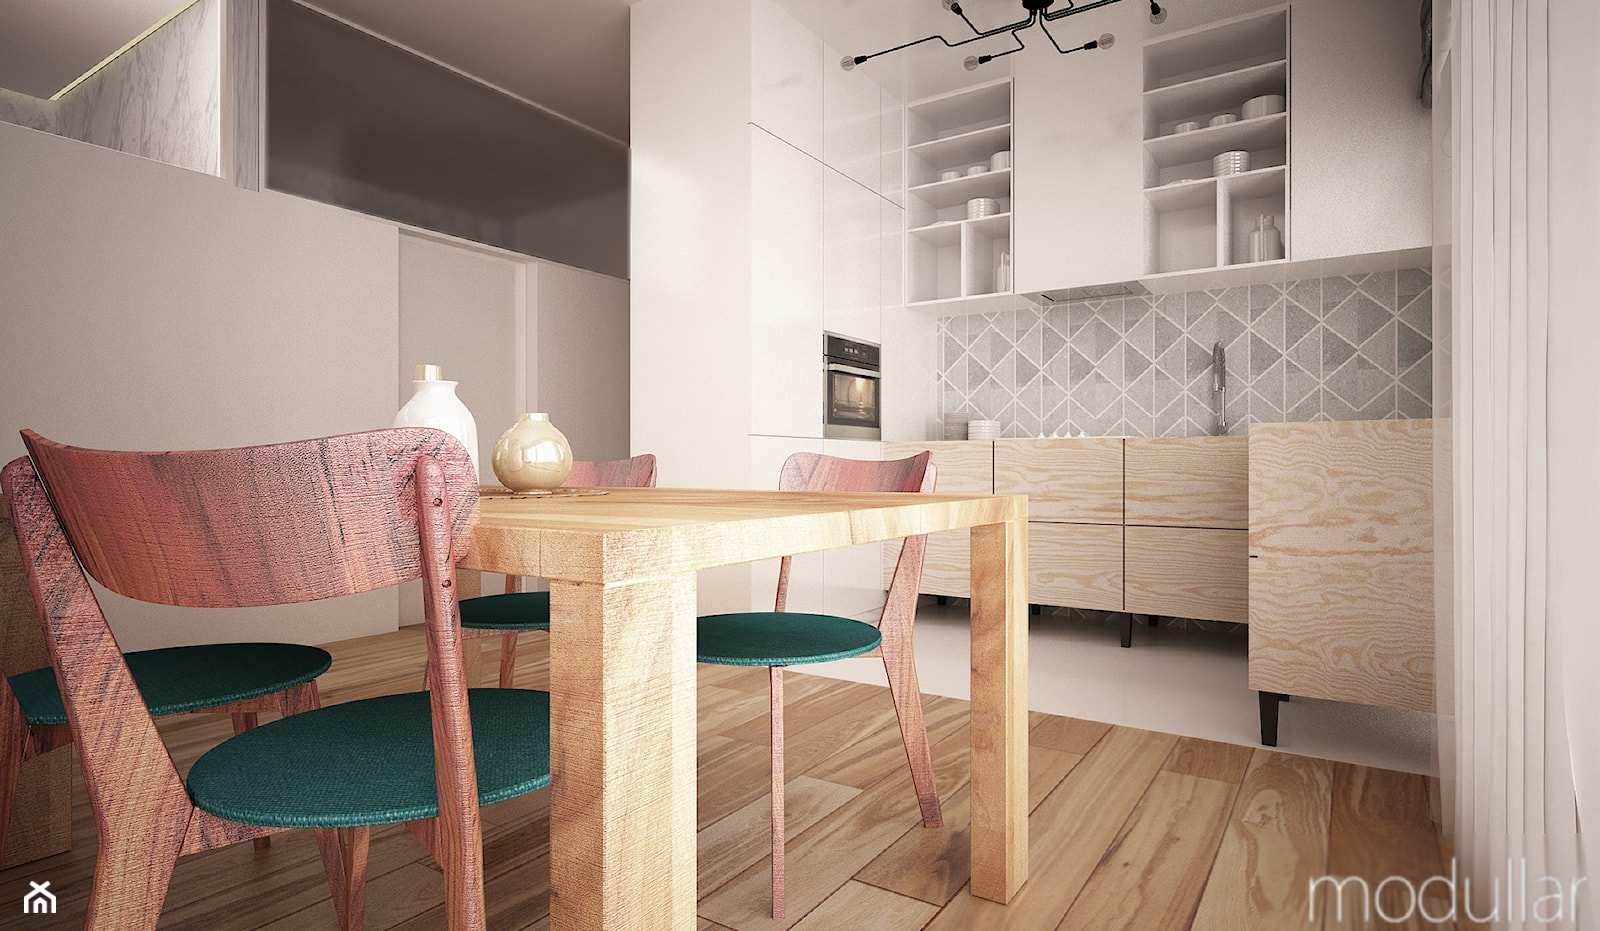 Bielany mieszkanie - Mała otwarta z zabudowaną lodówką kuchnia w kształcie litery l, styl skandynaw ... - zdjęcie od MODULLAR - Homebook